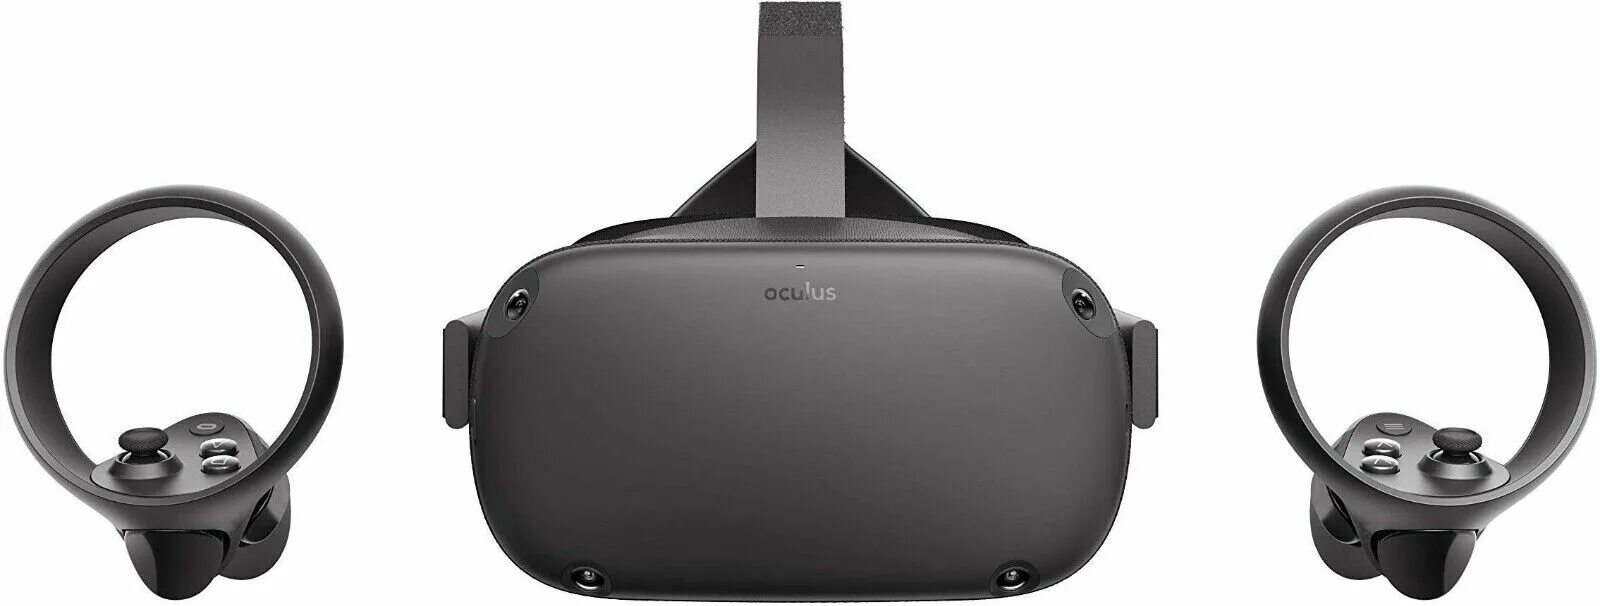 Купить очки окулус. ВР очки Oculus Quest. VR очки Oculus Quest 2. Шлем виртуальной реальности Oculus Quest - 64 GB. Шлем виртуальной реальности Oculus Quest 2 128 GB.